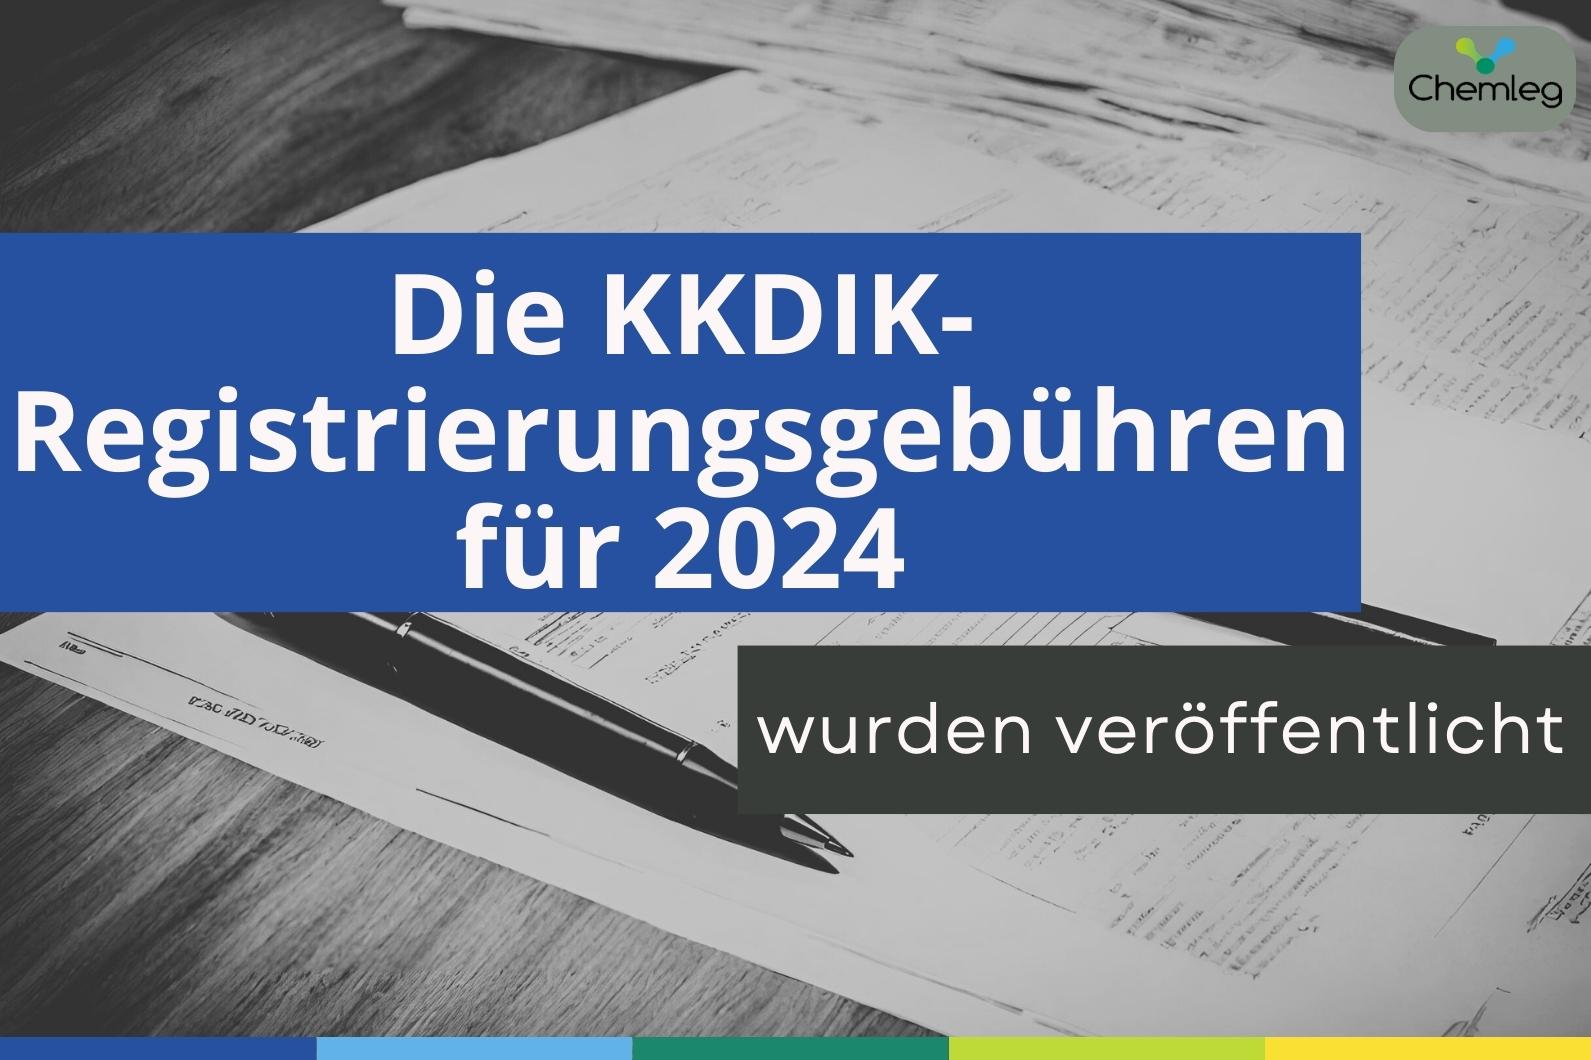 Die KKDIK-Registrierungsgebühren für 2024 wurden veröffentlicht